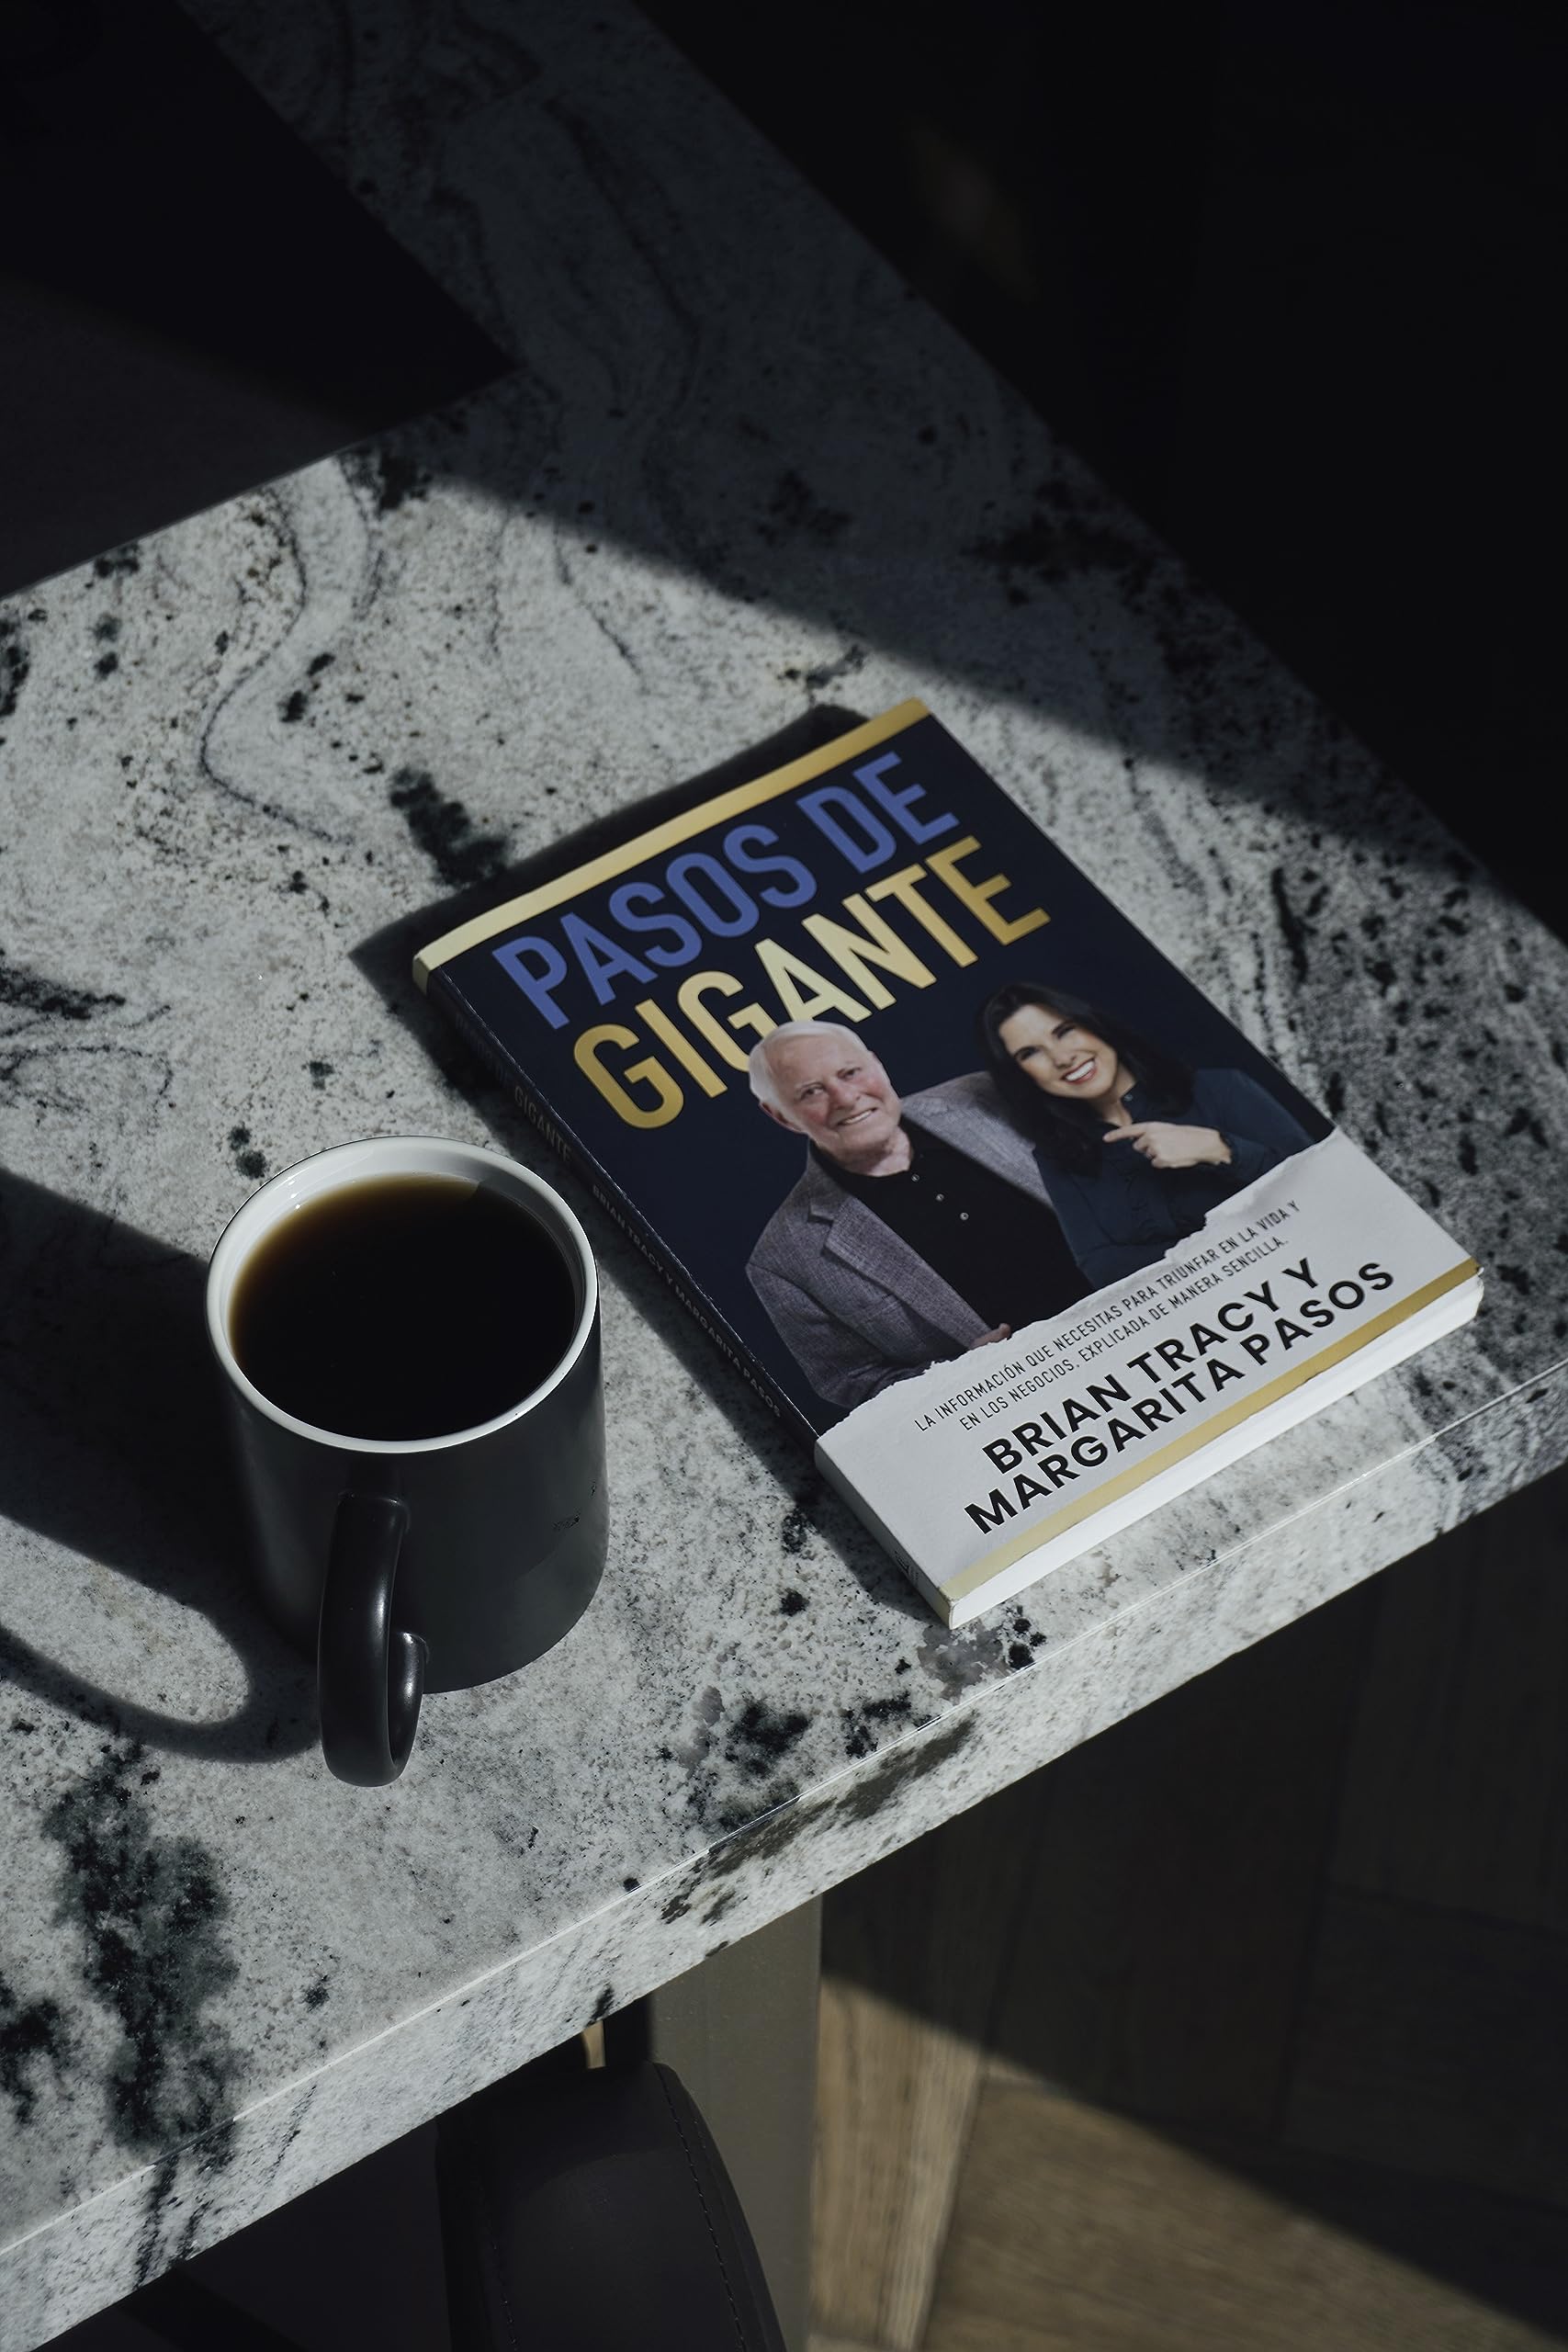 Pasos de gigante: La información que necesitas para triunfar en la vida y en los negocios, explicada de manera sencilla (Spanish Edition)